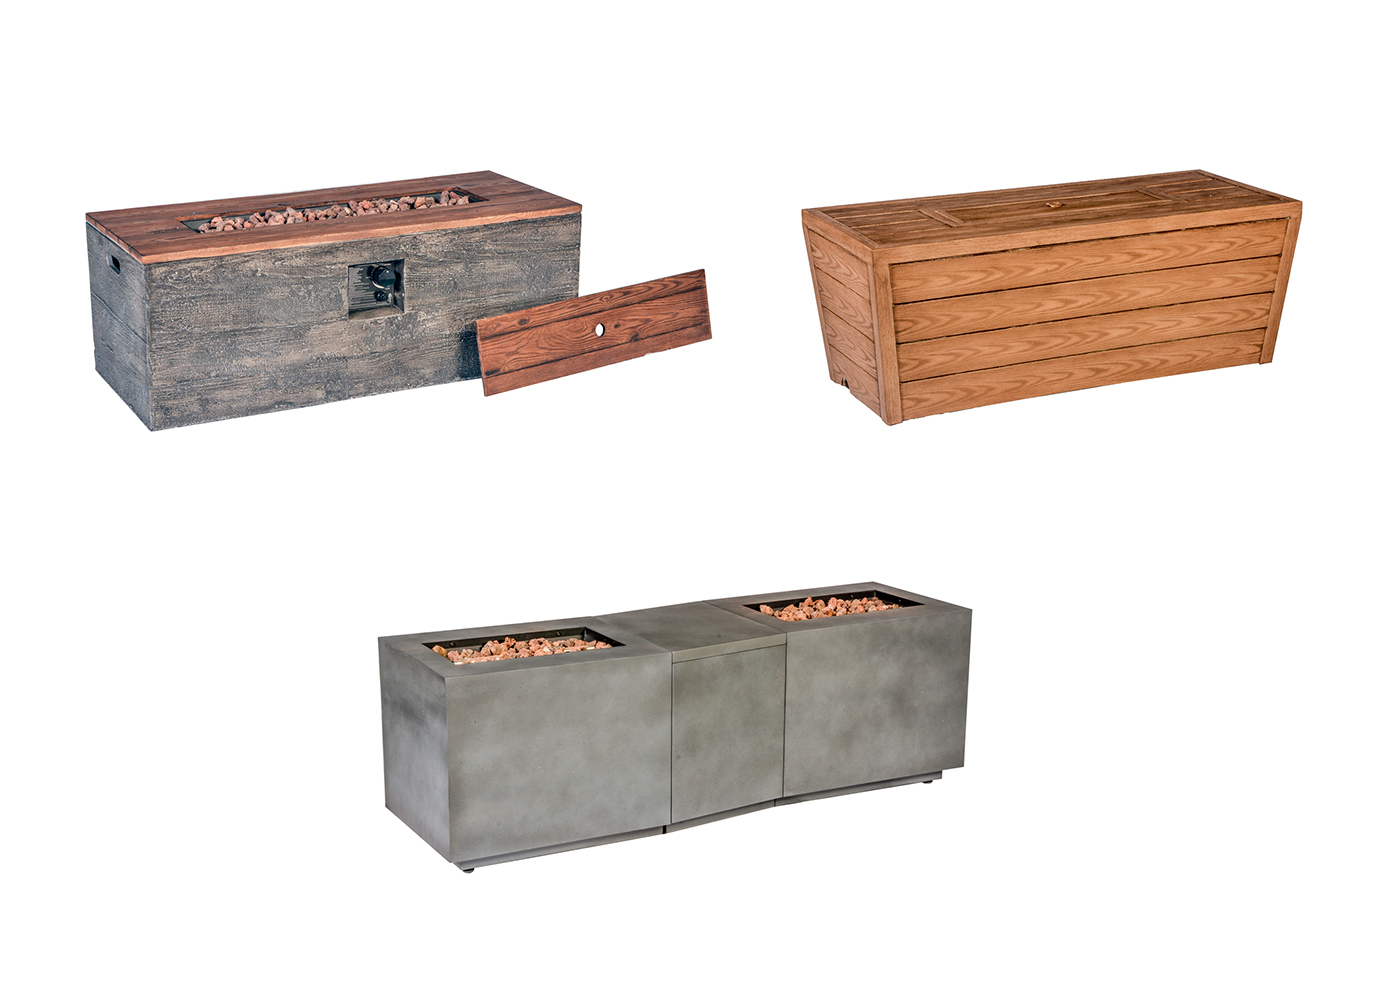 design industrial design  product design  wood furniture outdoor furniture Fire Table sample market Modern Design